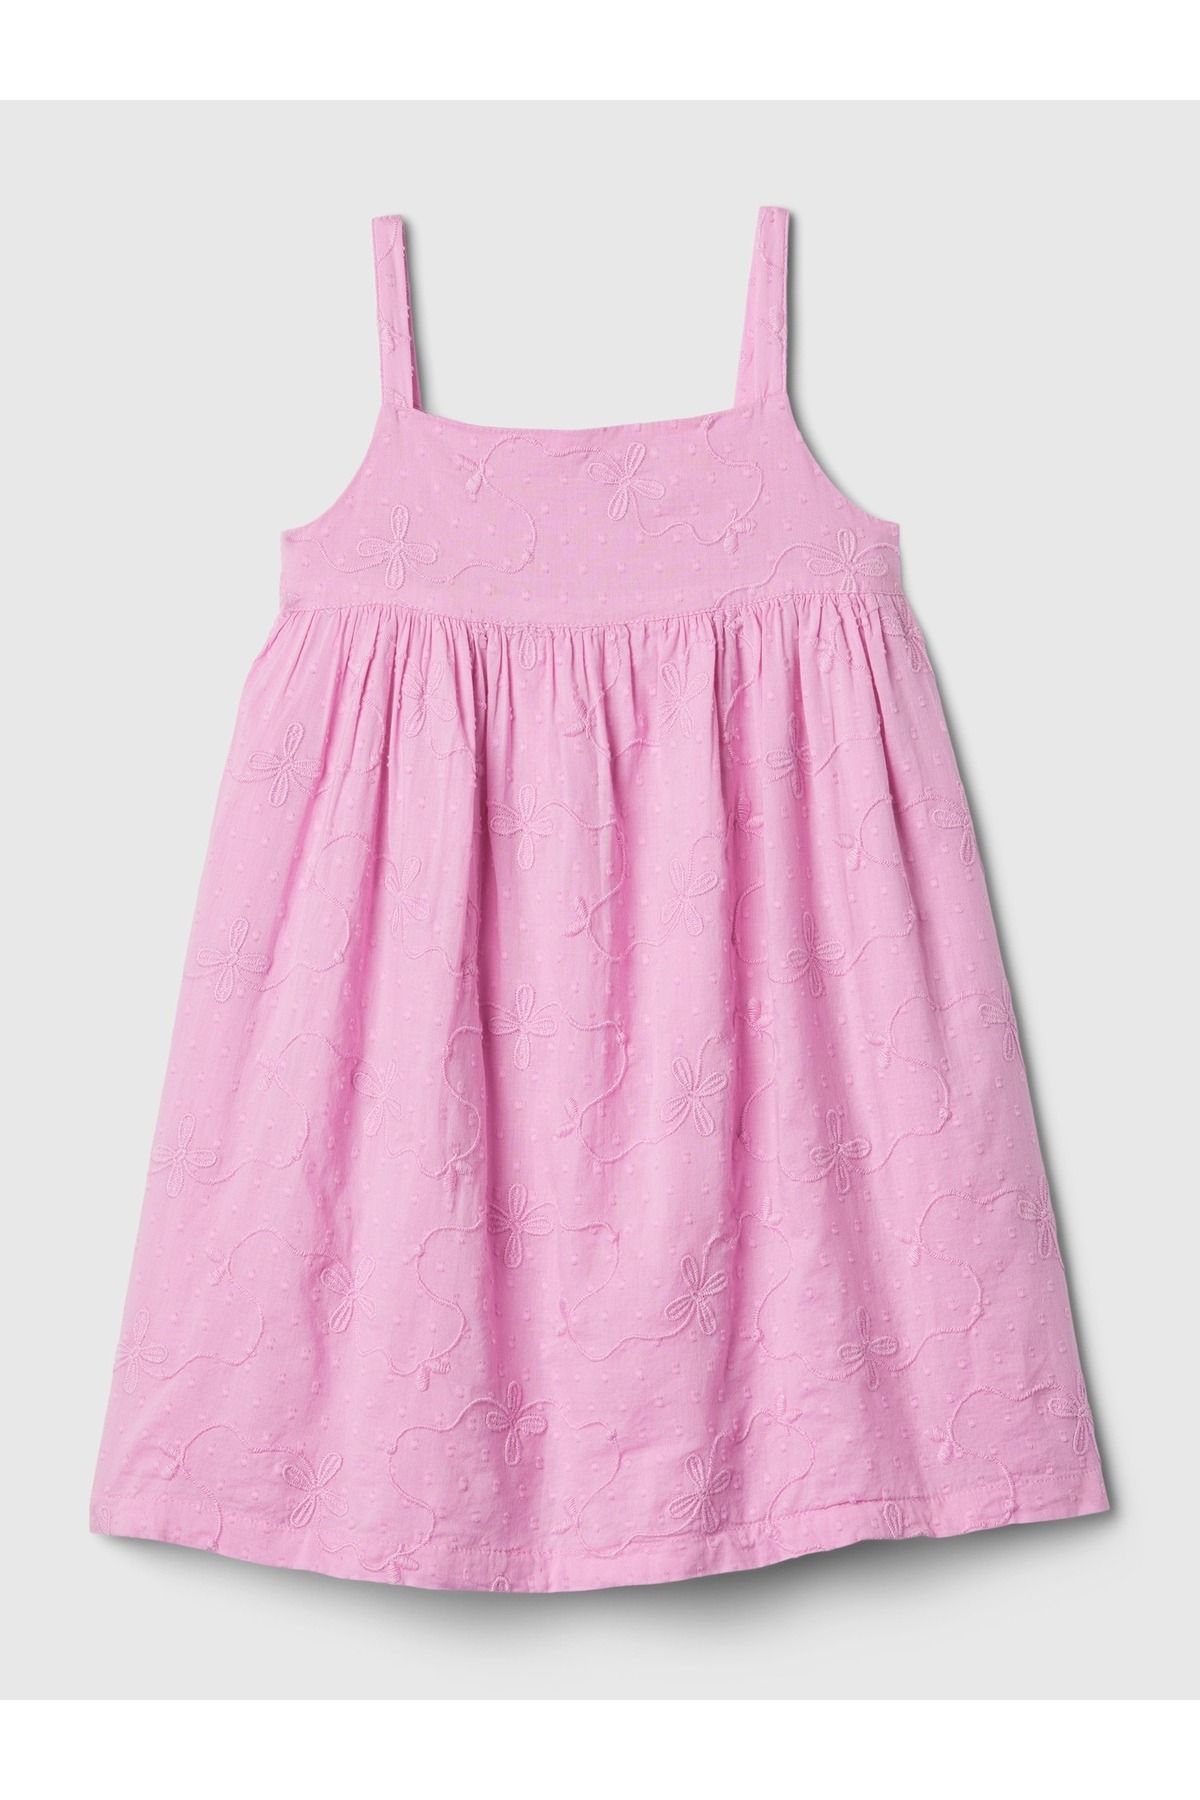 GAP Kız Bebek Pembe İşlemeli Elbise